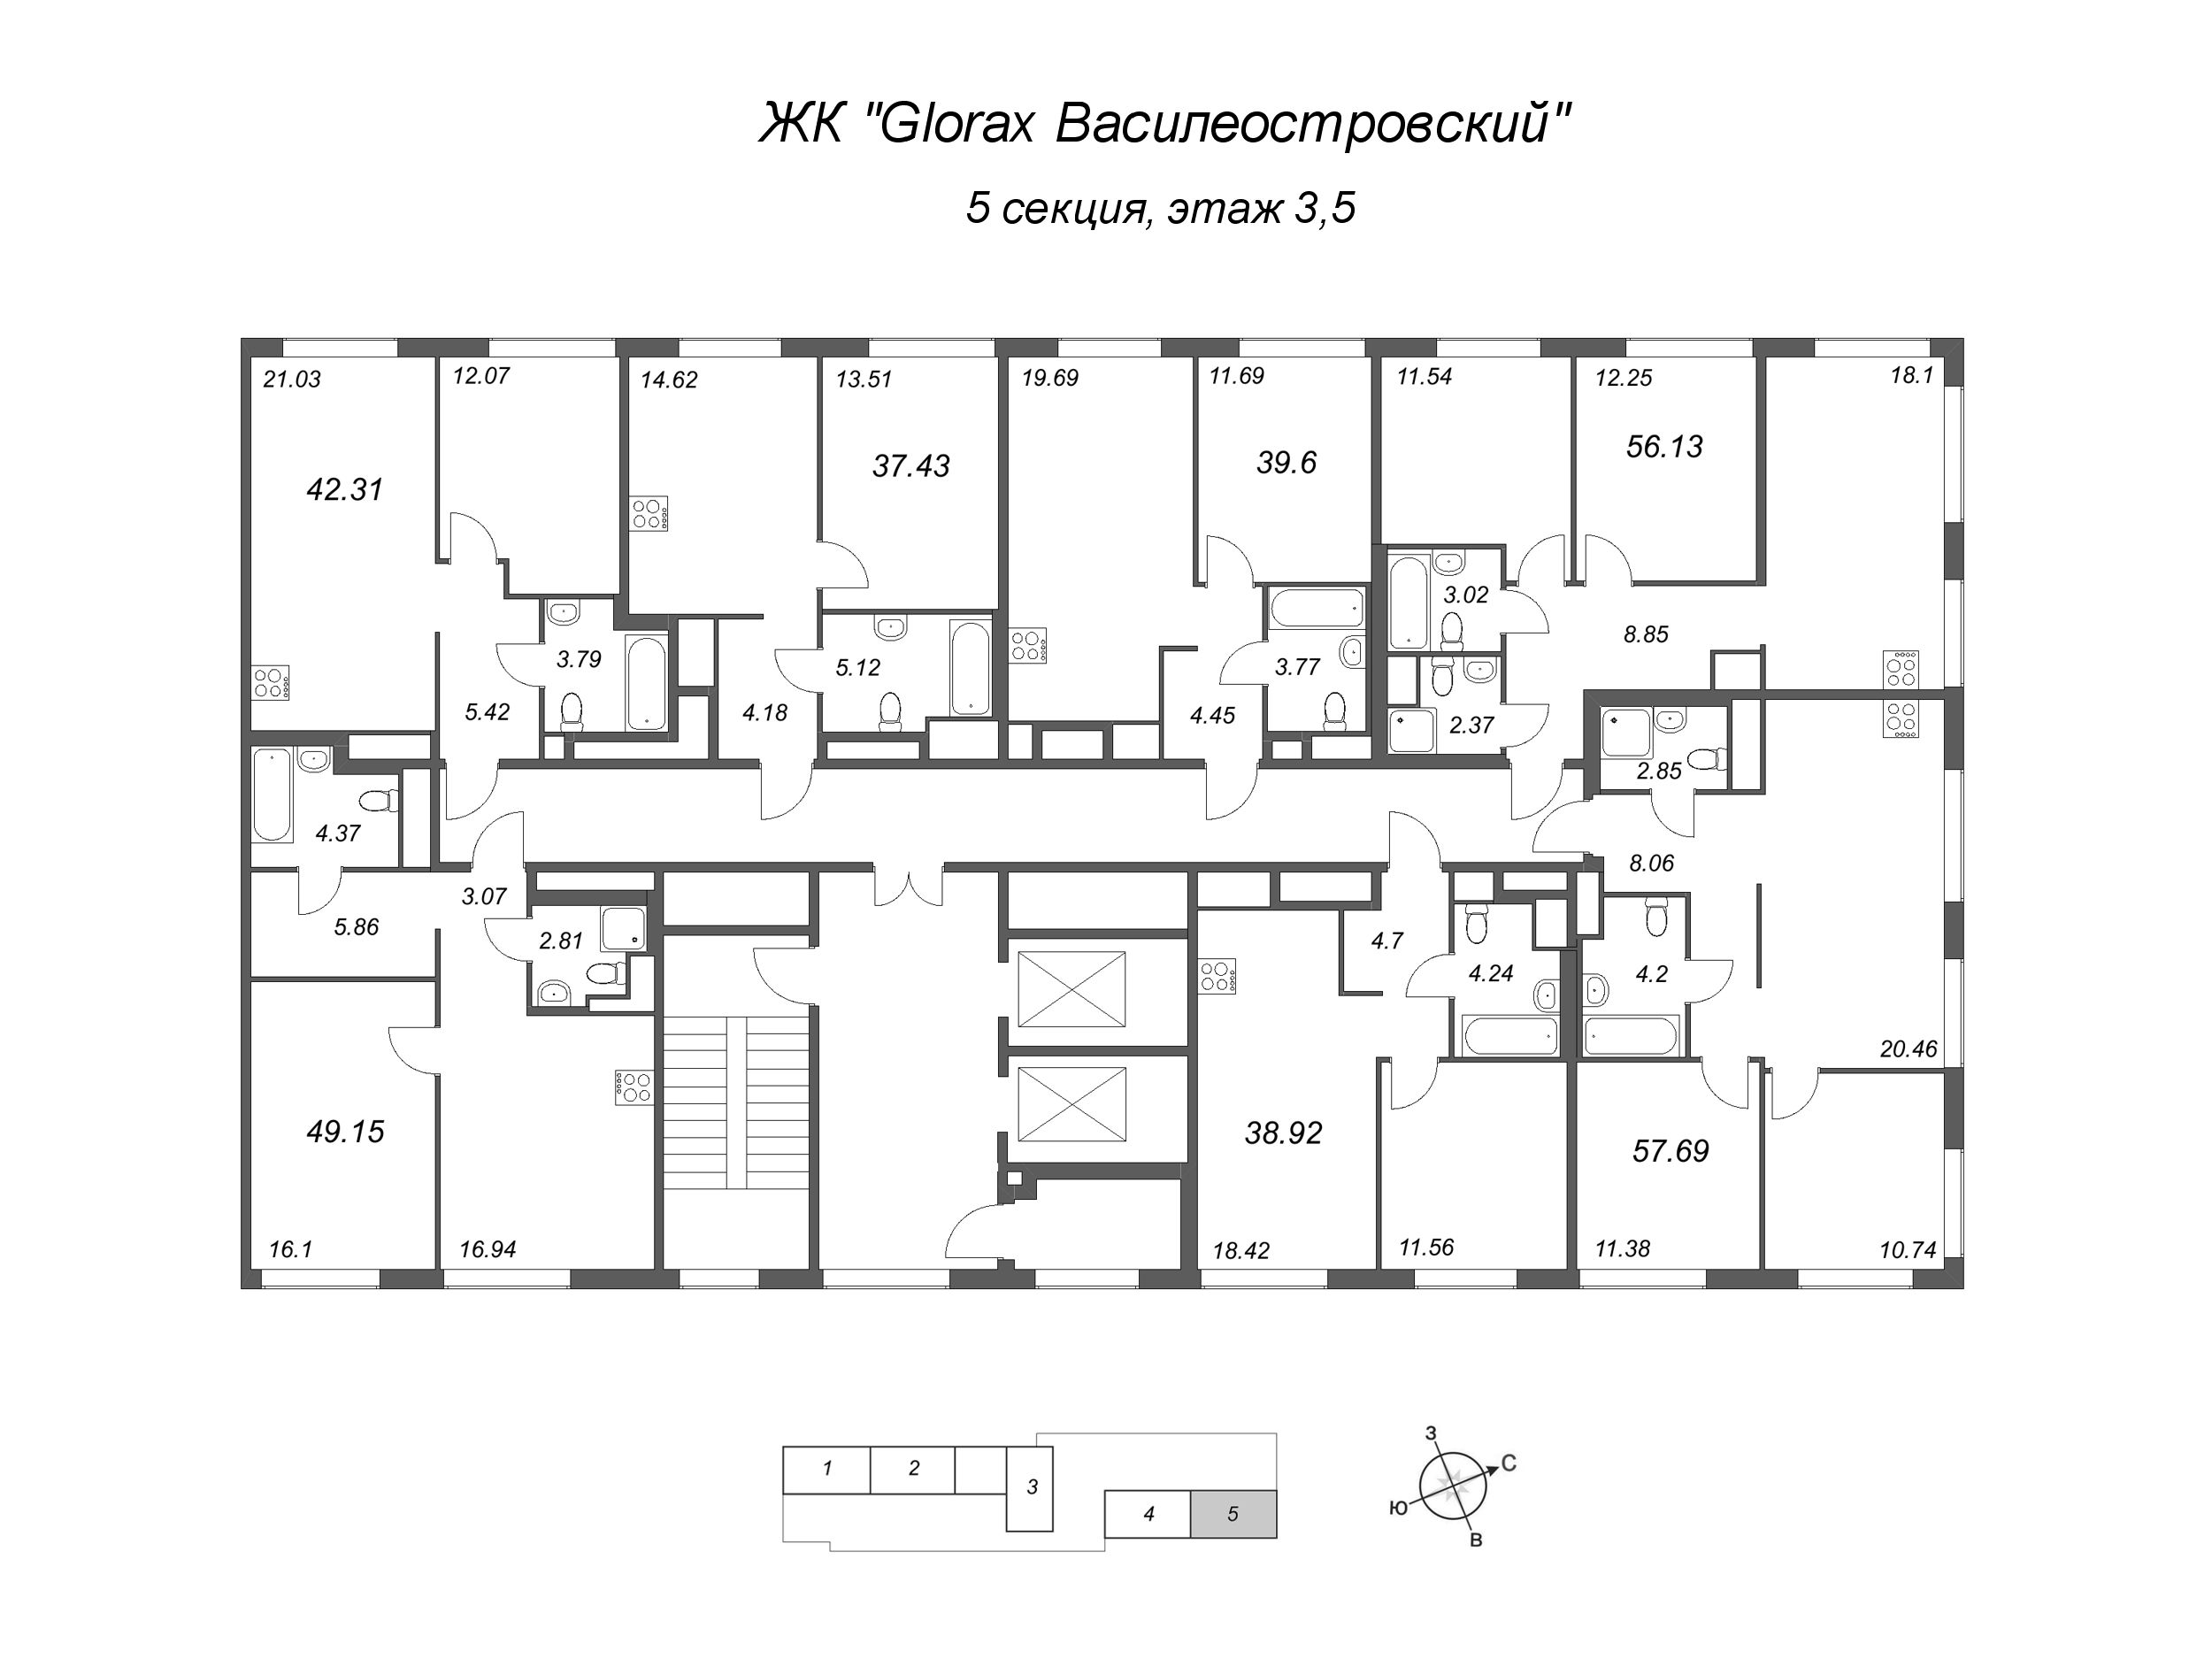 2-комнатная (Евро) квартира, 38.92 м² в ЖК "GloraX Василеостровский" - планировка этажа